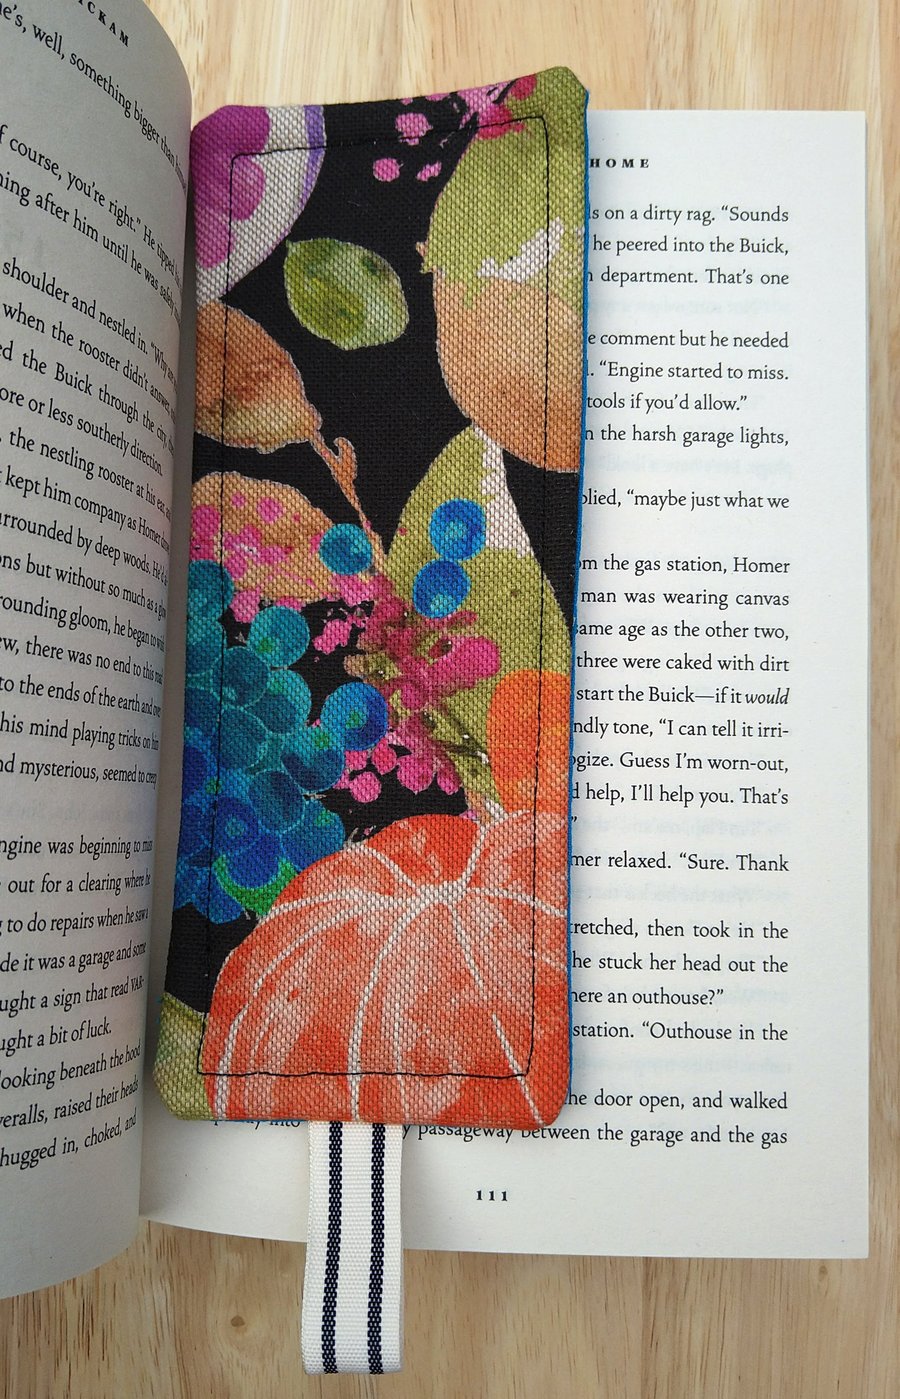 Bookmark with vintage fruit design